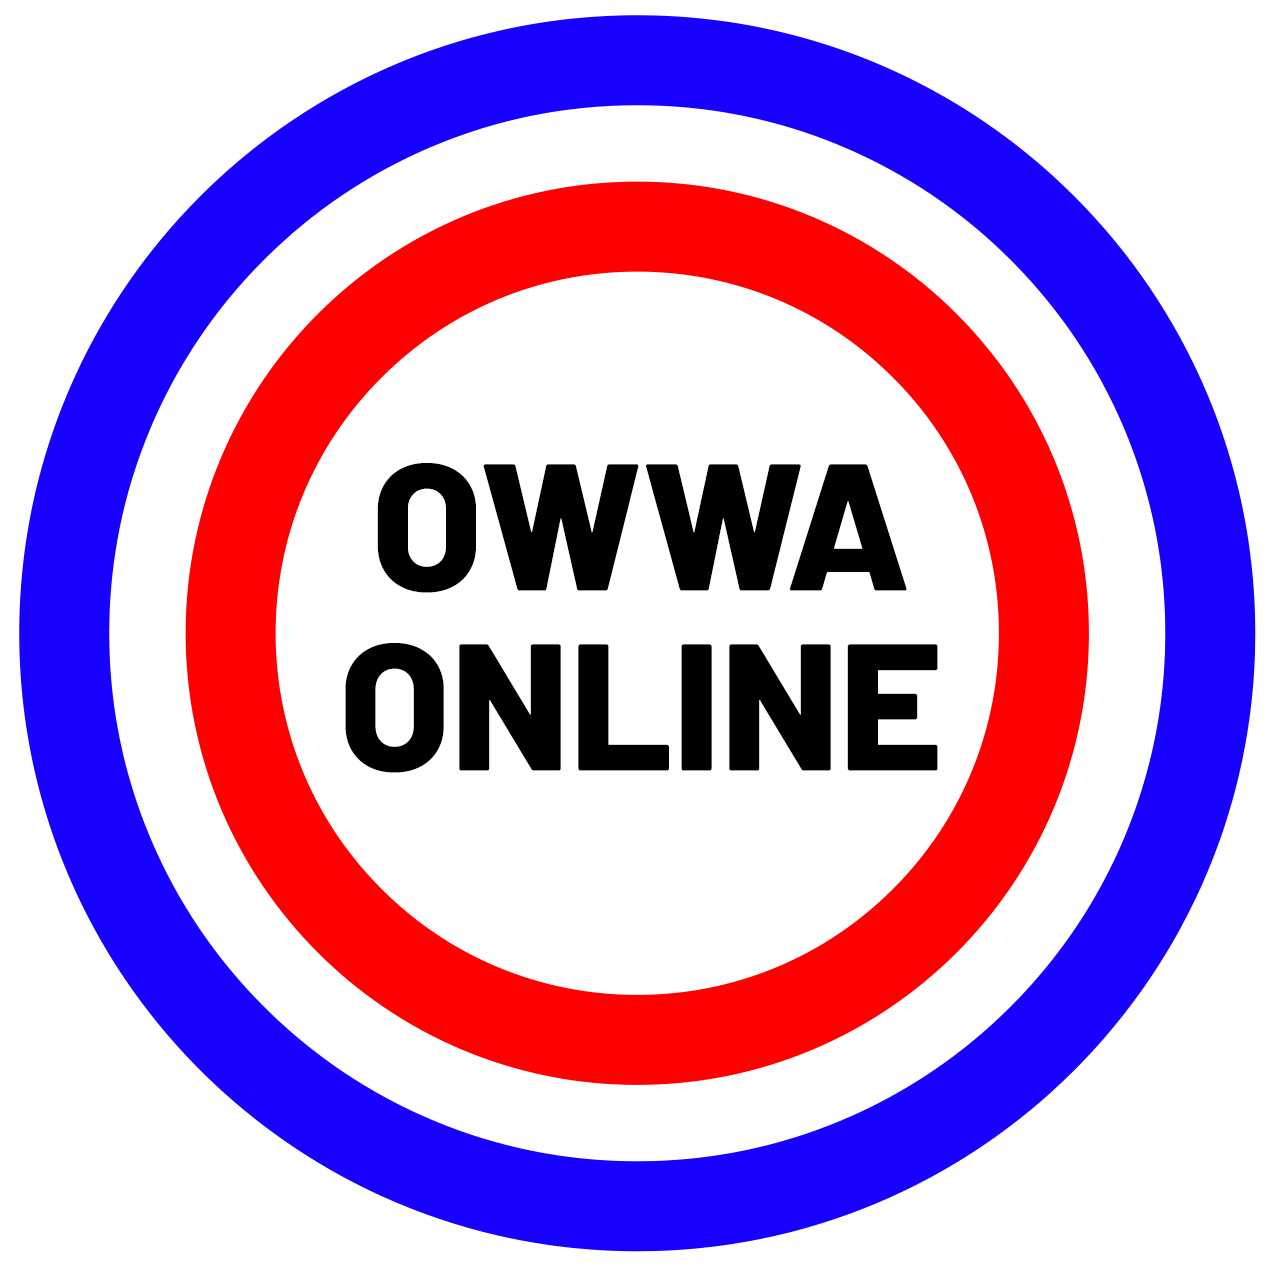 OWWA Online